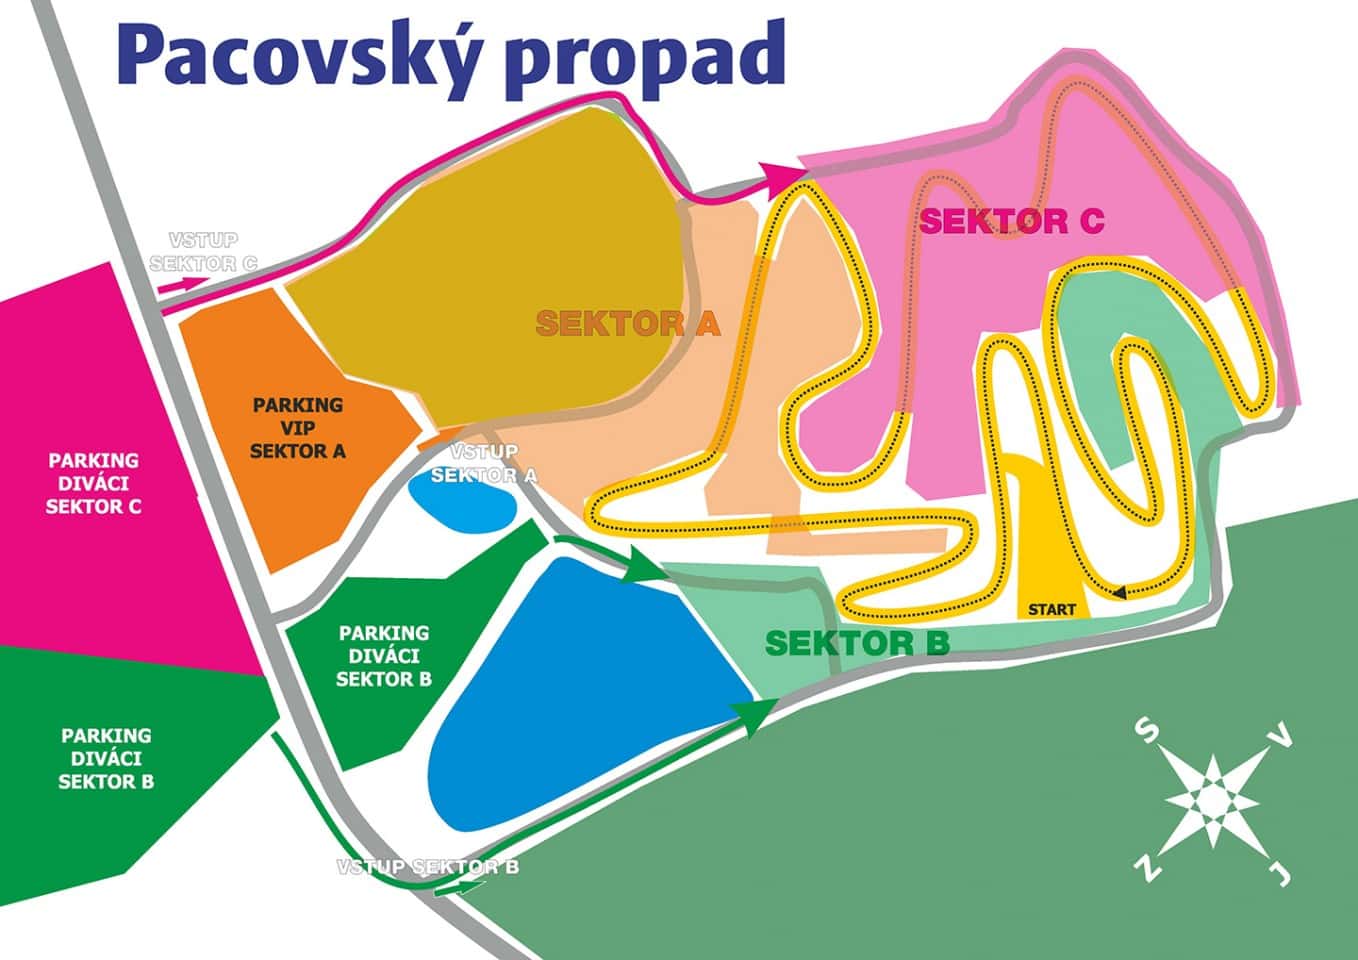 Tschechische Motocross-Meisterschaft 2020 in Pacov - Vorschau Sektoren